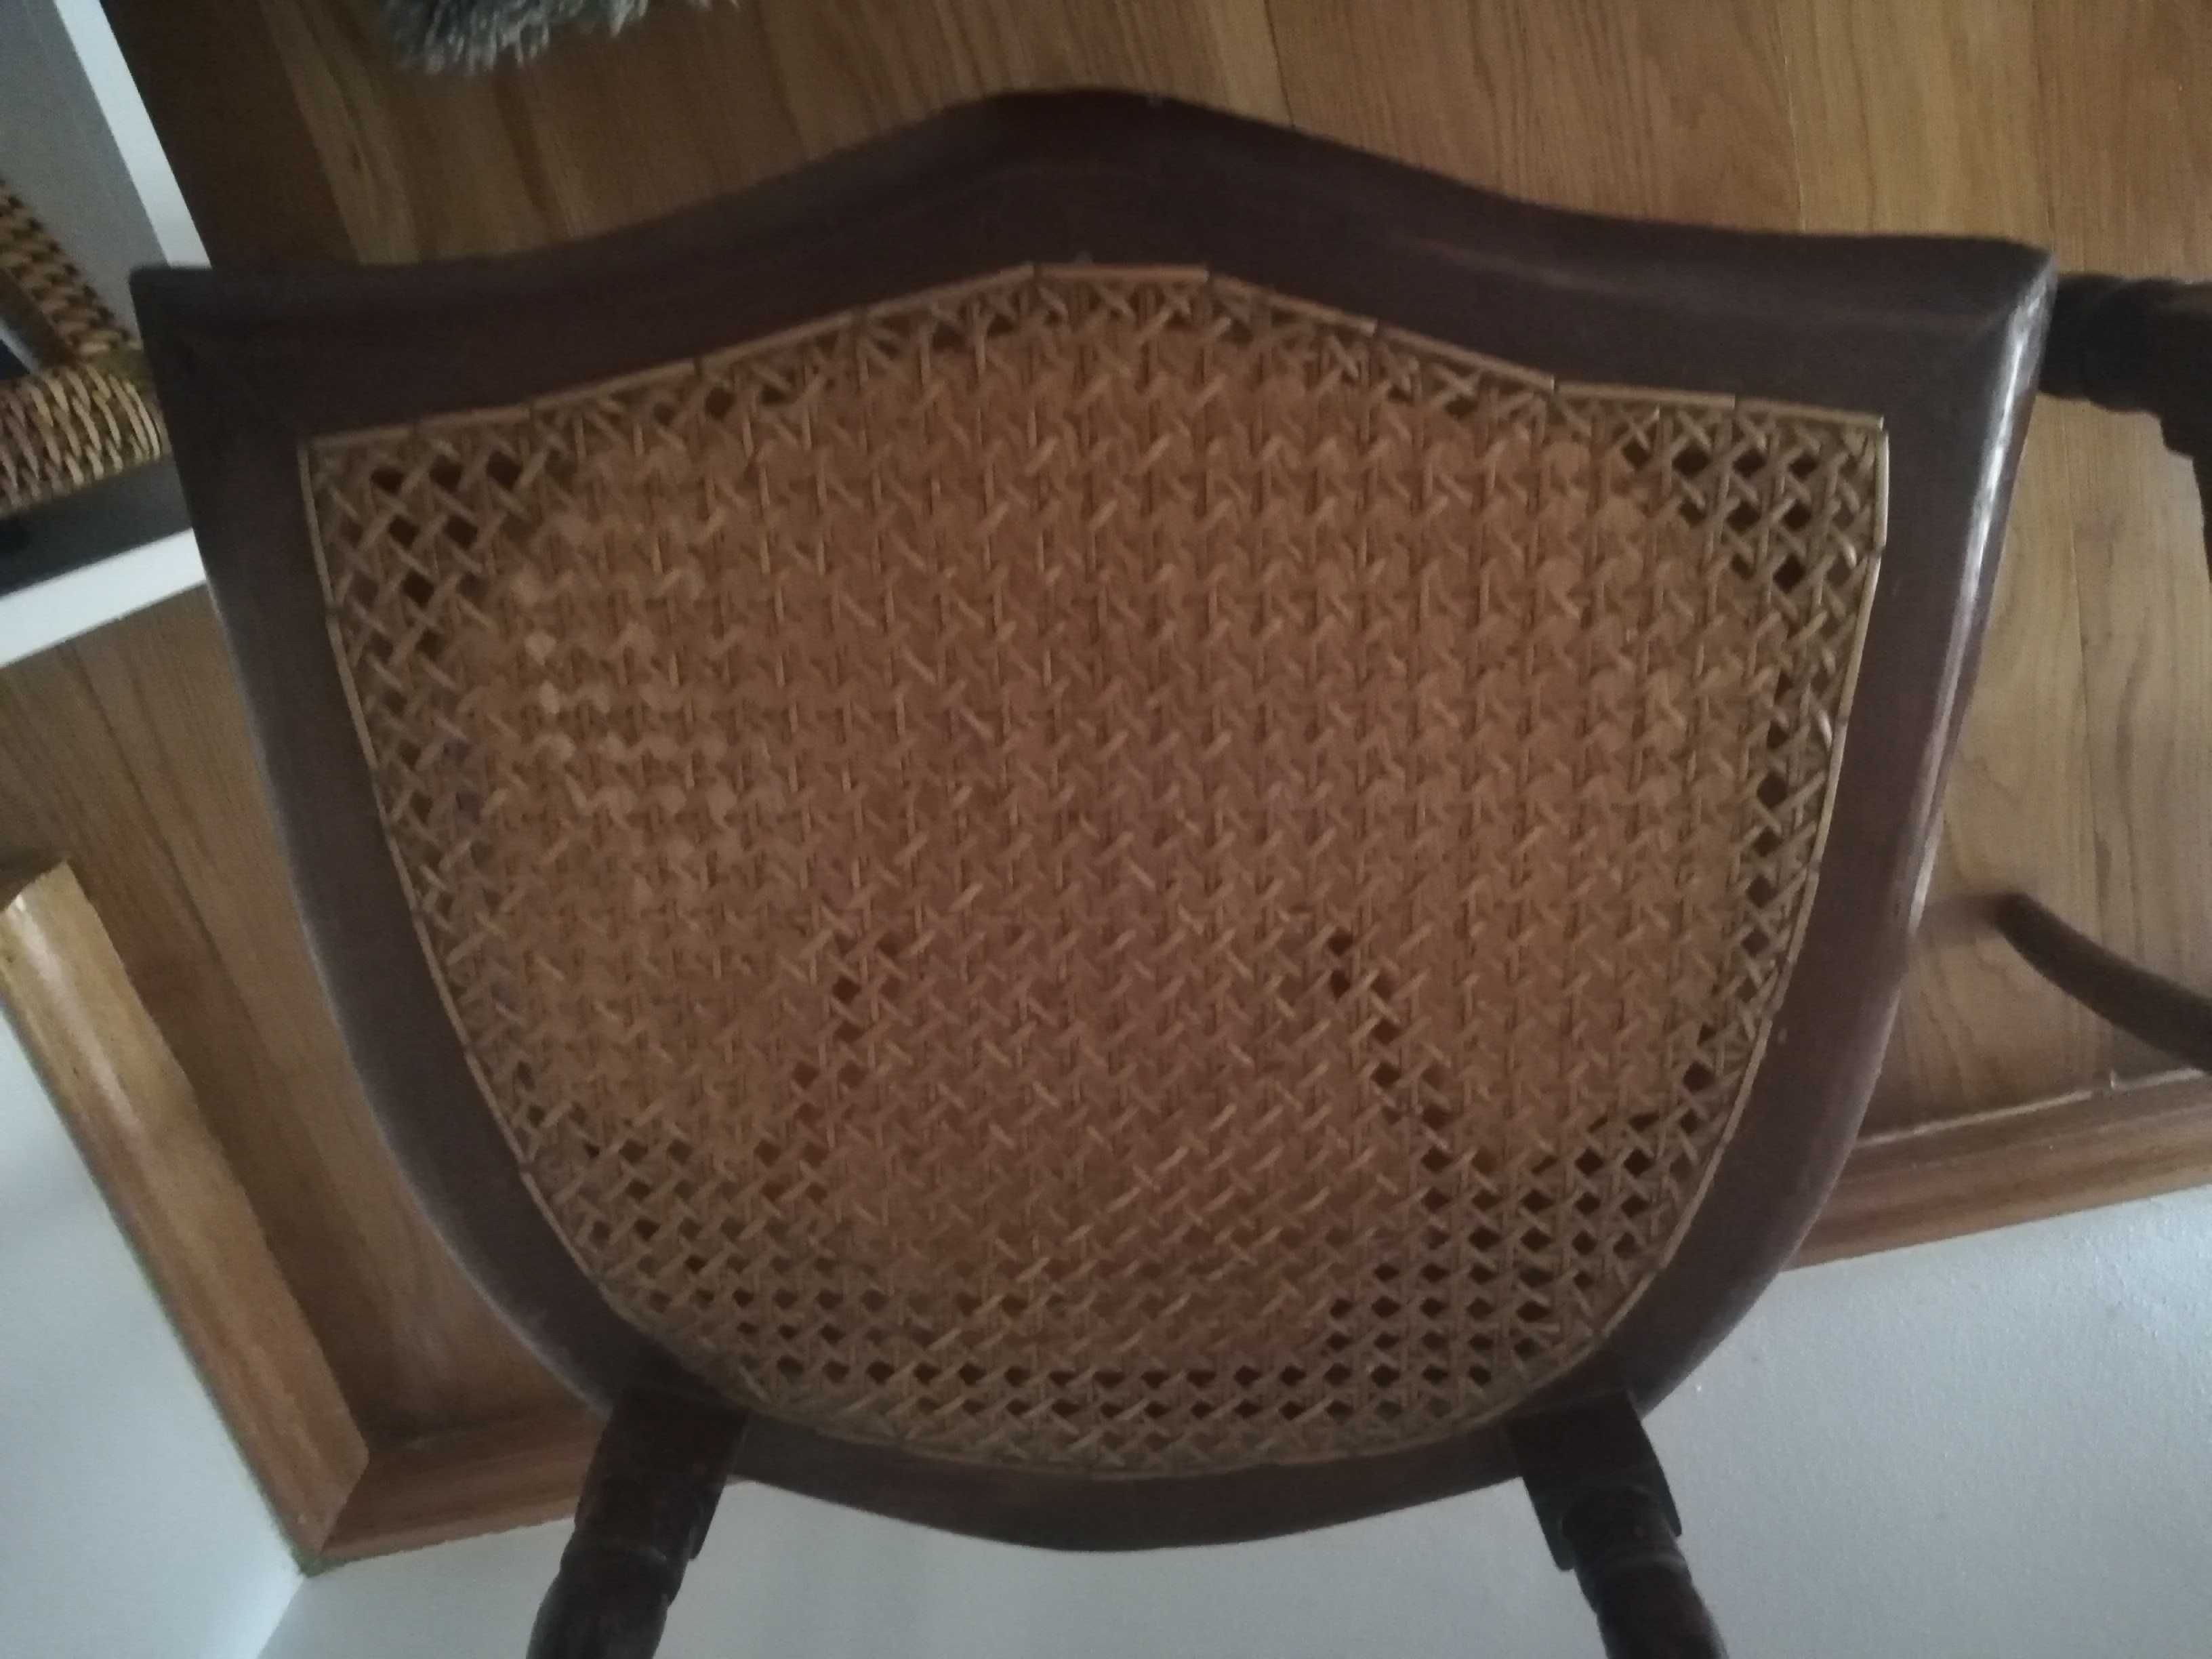 2 cadeiras românticas dos inícios do sec. XX, restauradas